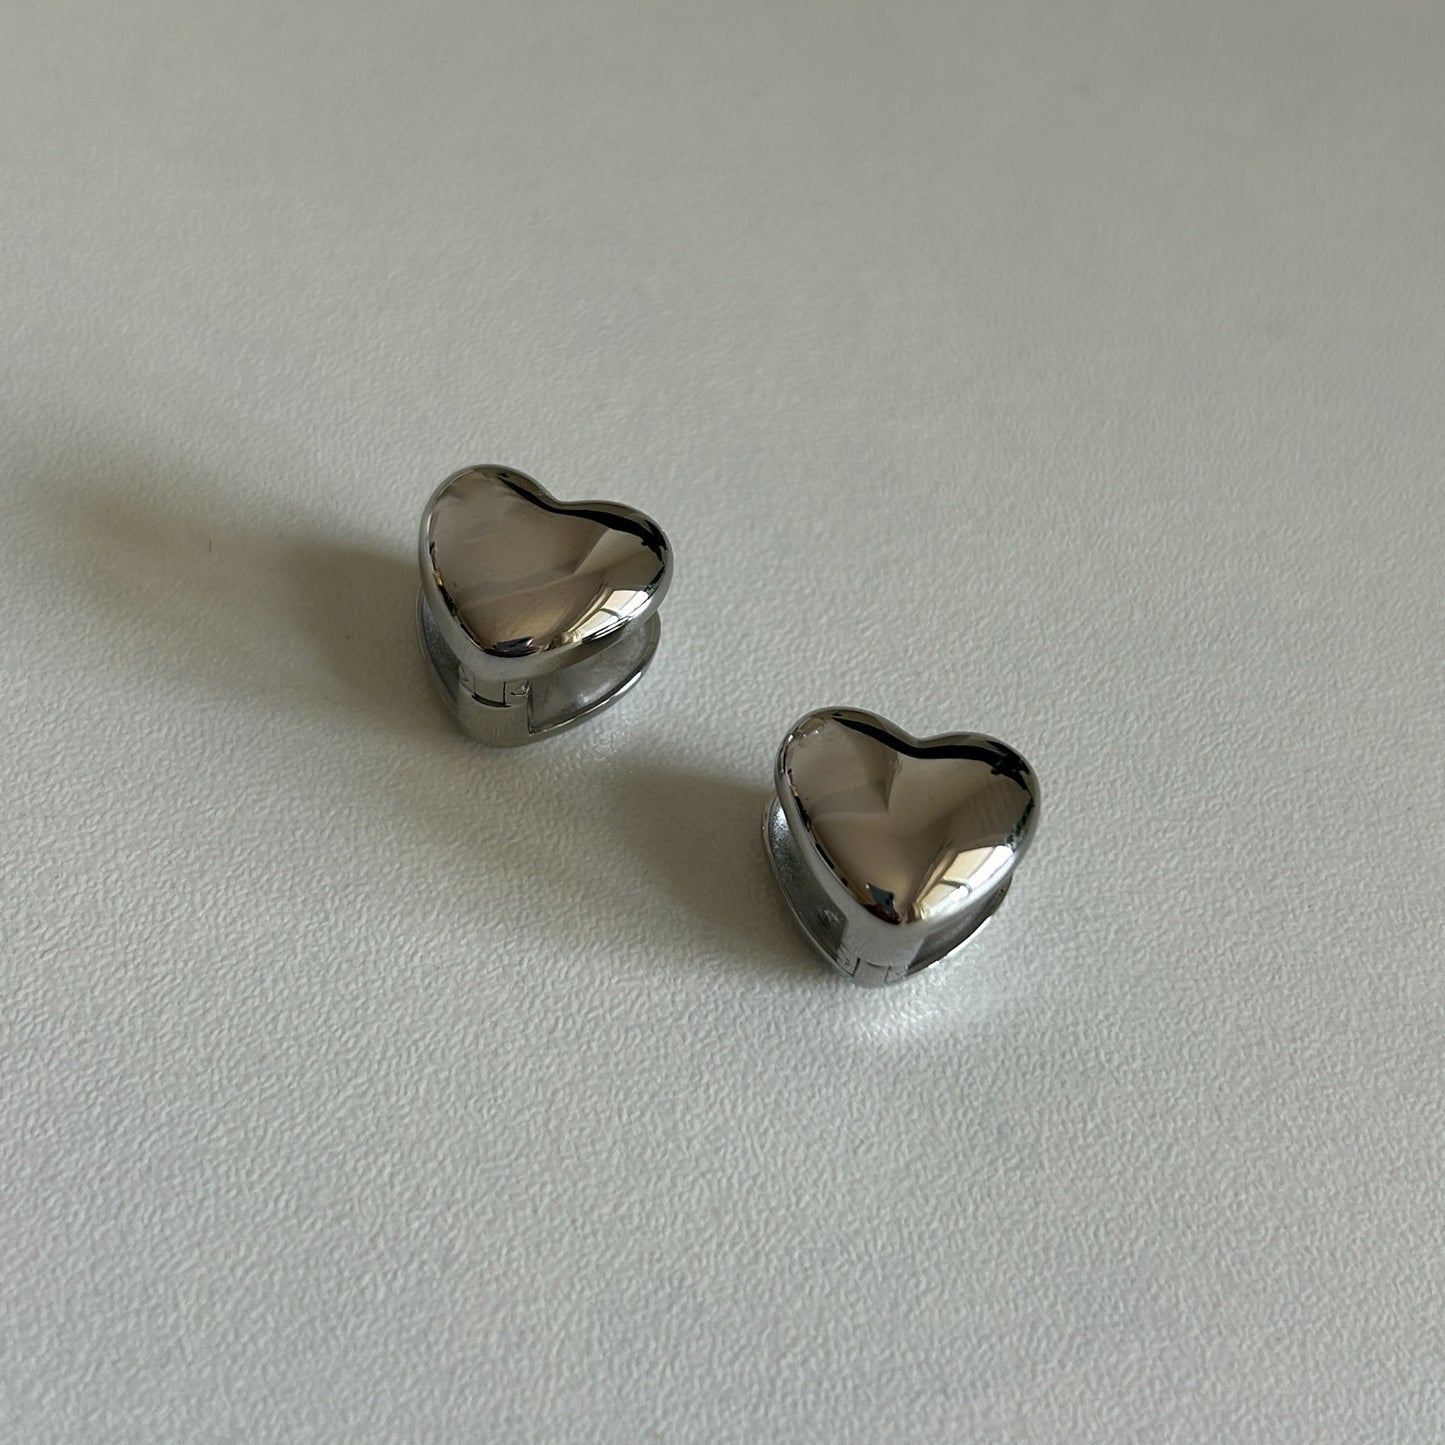 Puffy Heart Earrings